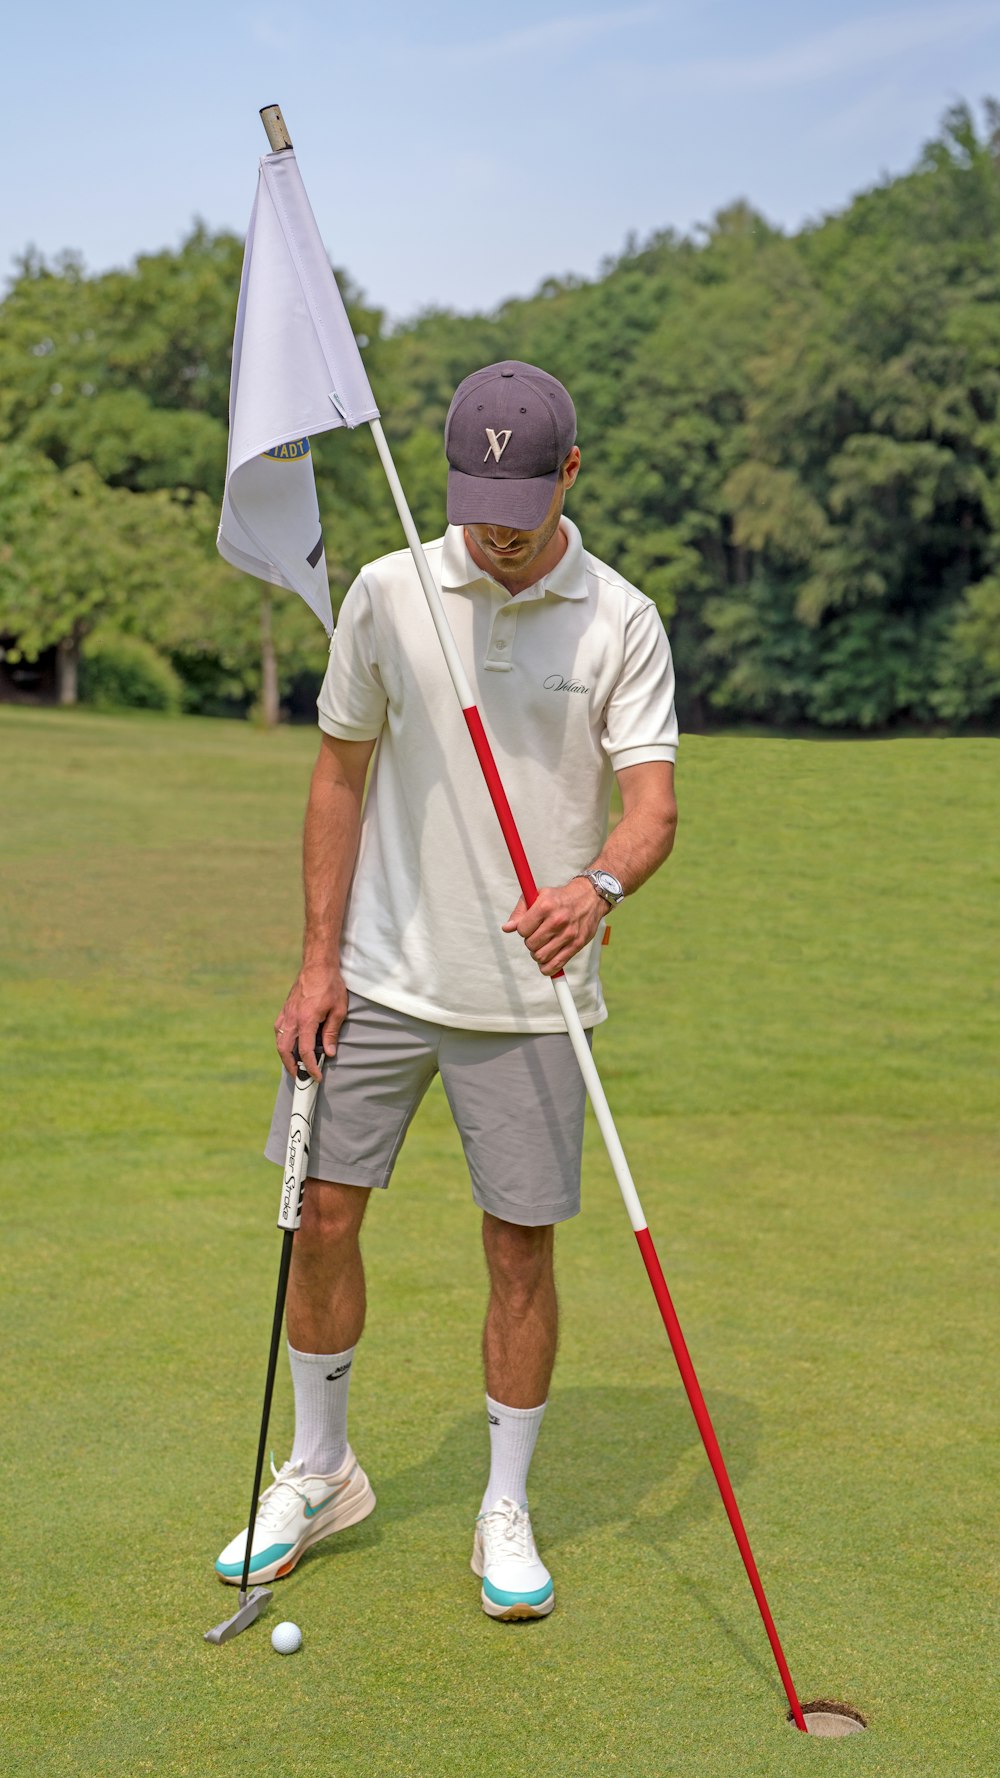 Un hombre sosteniendo un palo de golf y una bandera